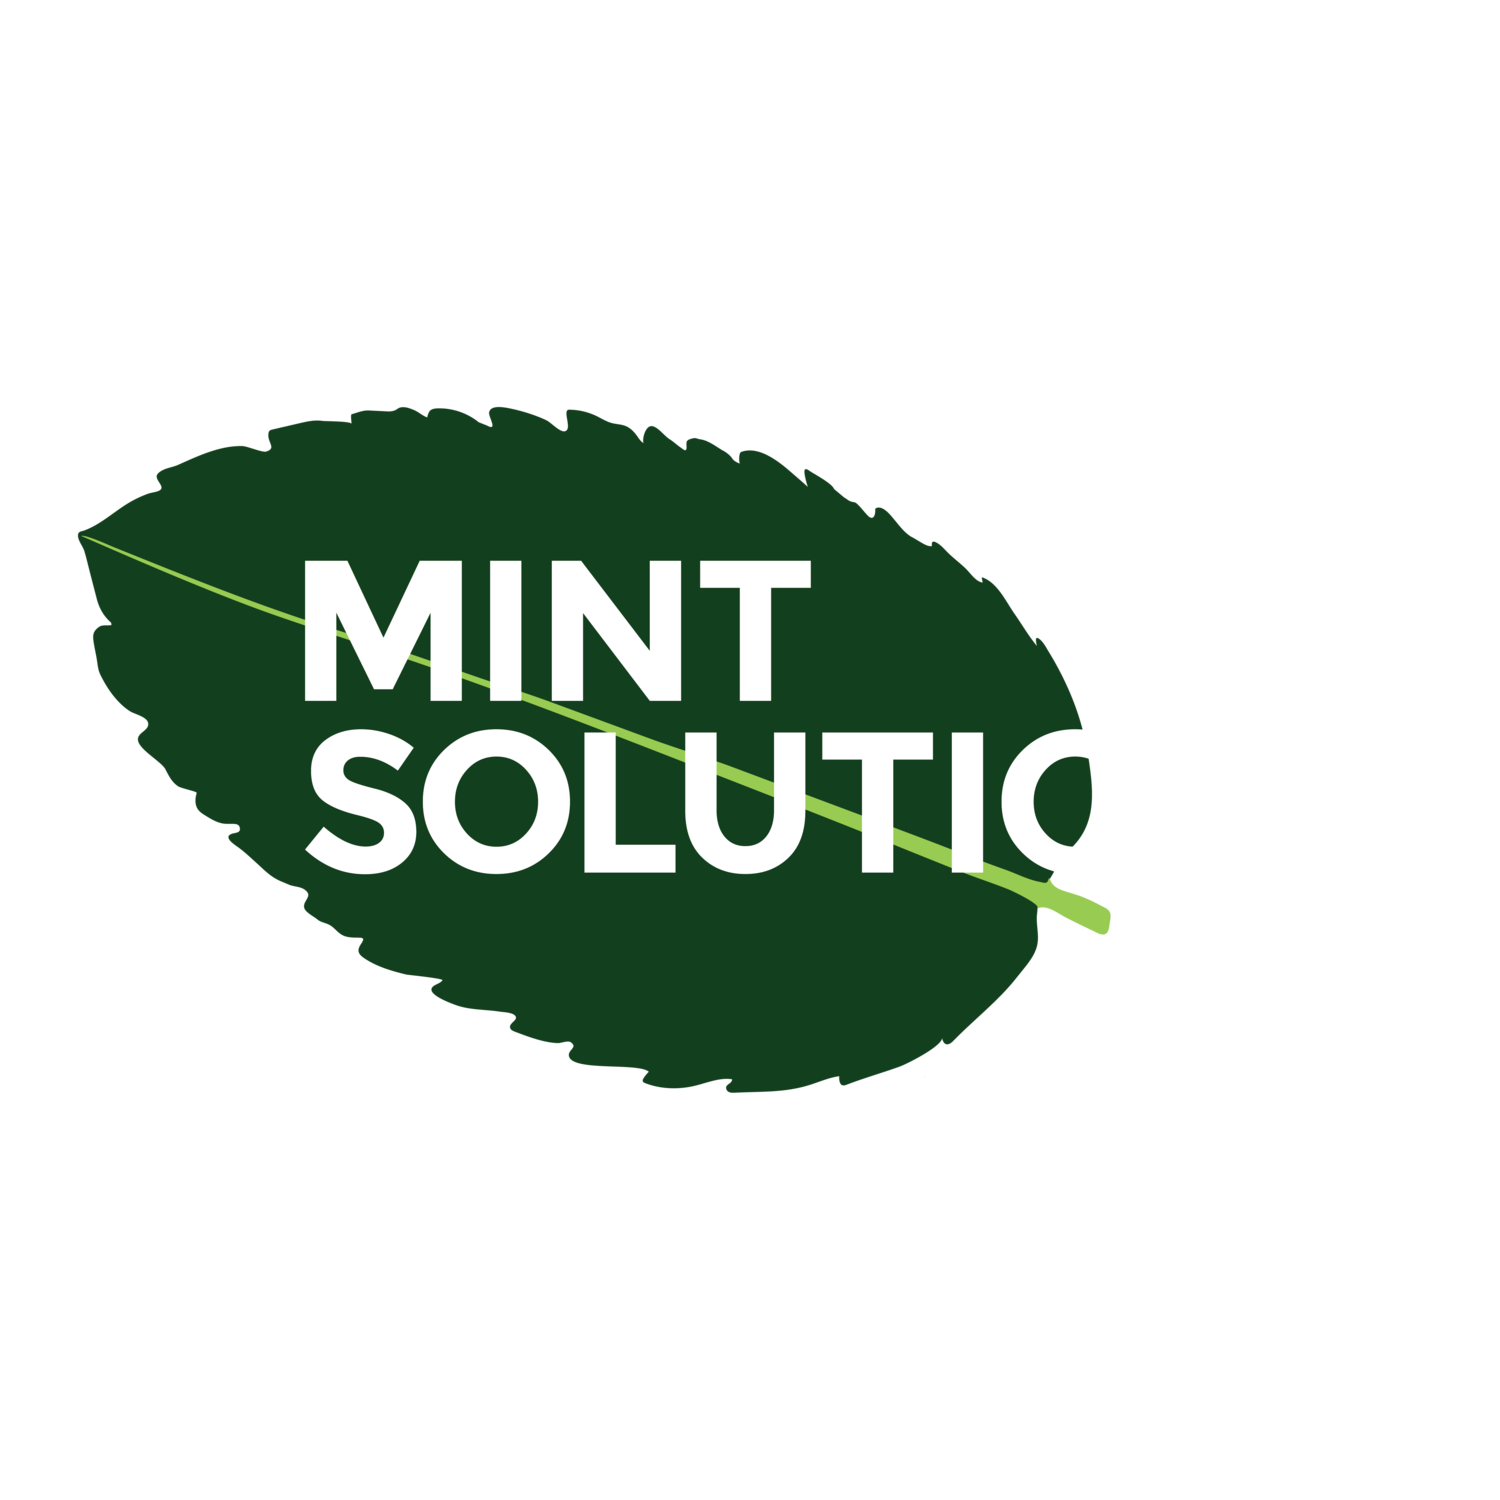 Mint Solutions Ltd